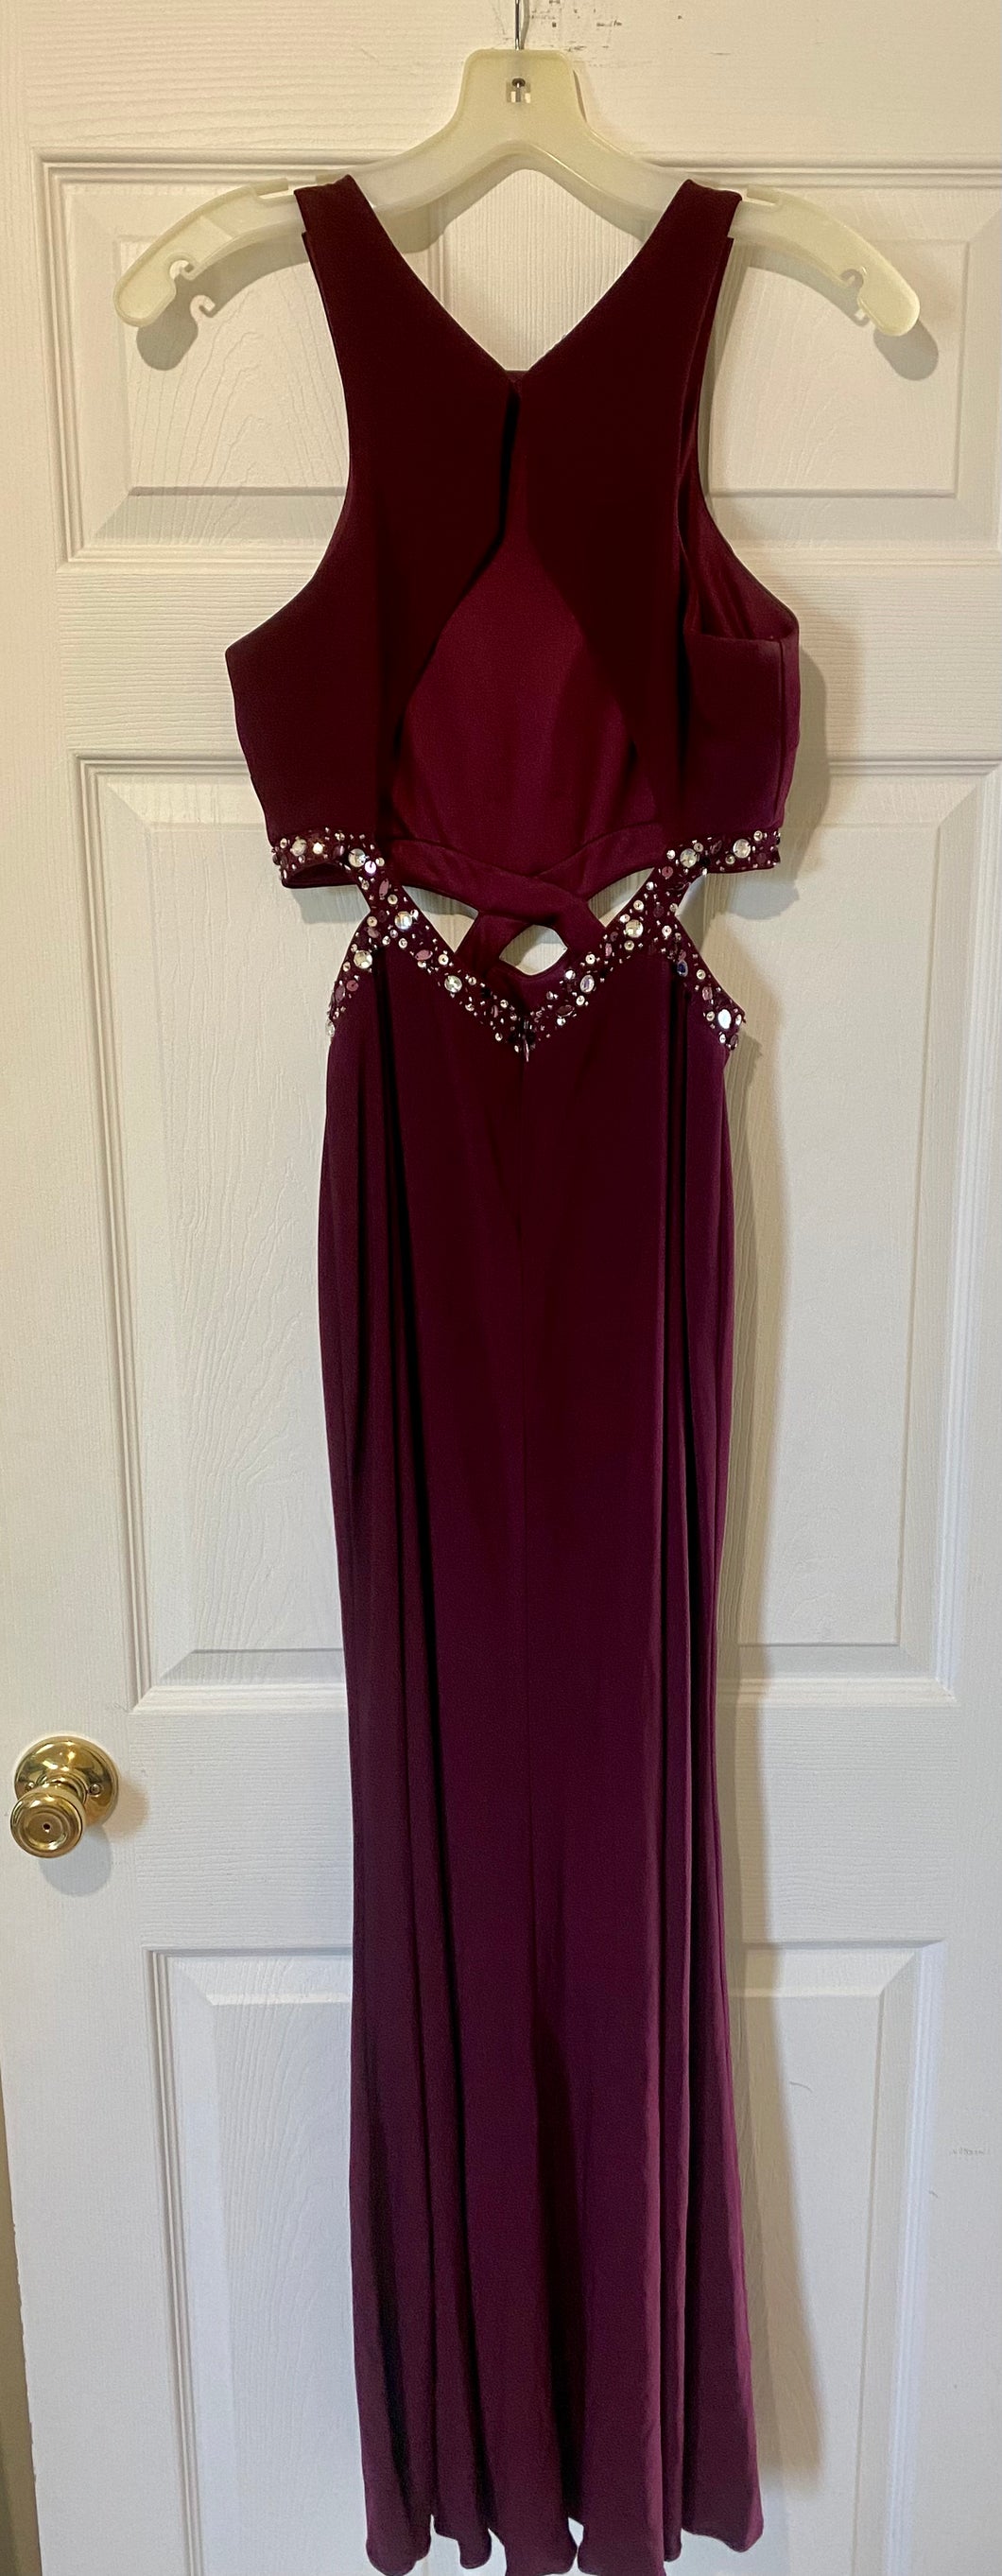 CASS100-D Long Burgundy Gown. Size 3